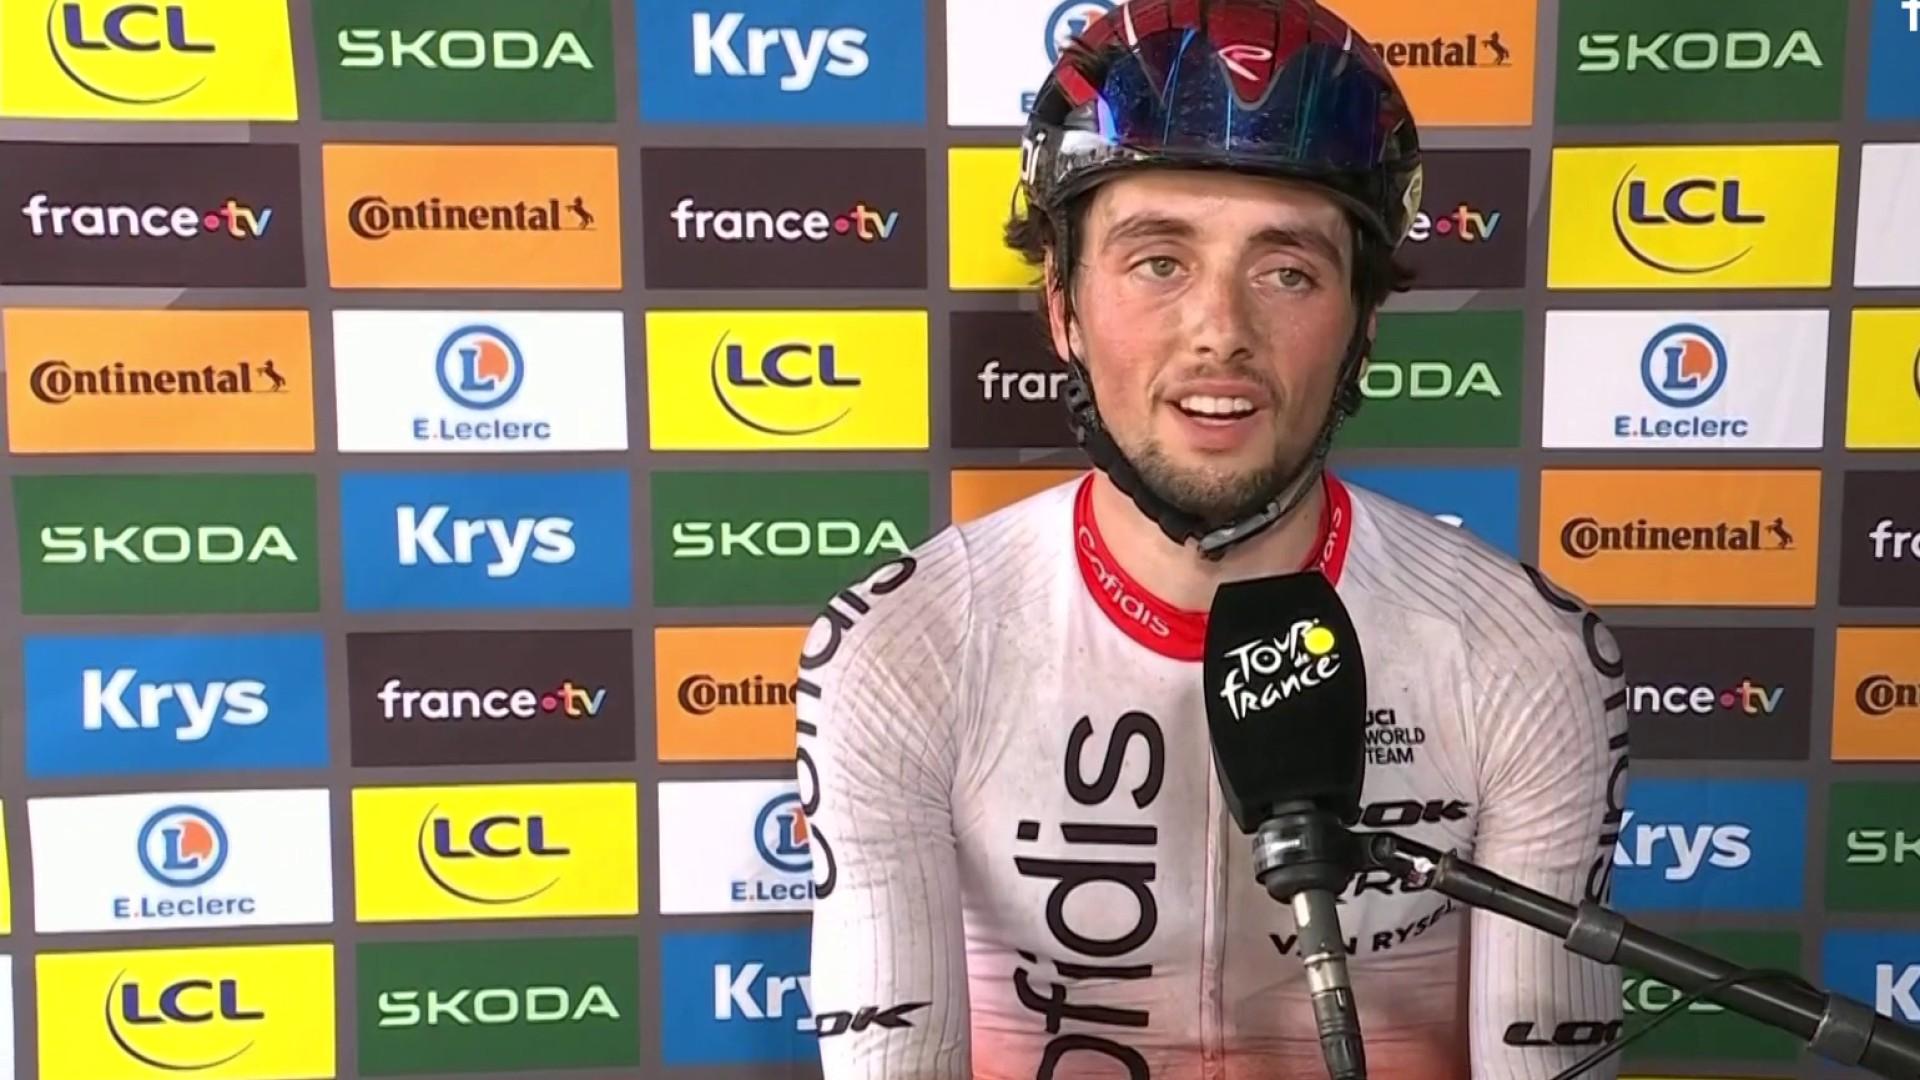 Vainqueur de la 2e étape du Tour de France, Victor Lafay réagit à sa victoire. Le coureur français de l'équipe Cofidis admet avoir profité du faux rythme dans les derniers mètres de la course pour piéger les favoris et effacer la frustration de la veille.